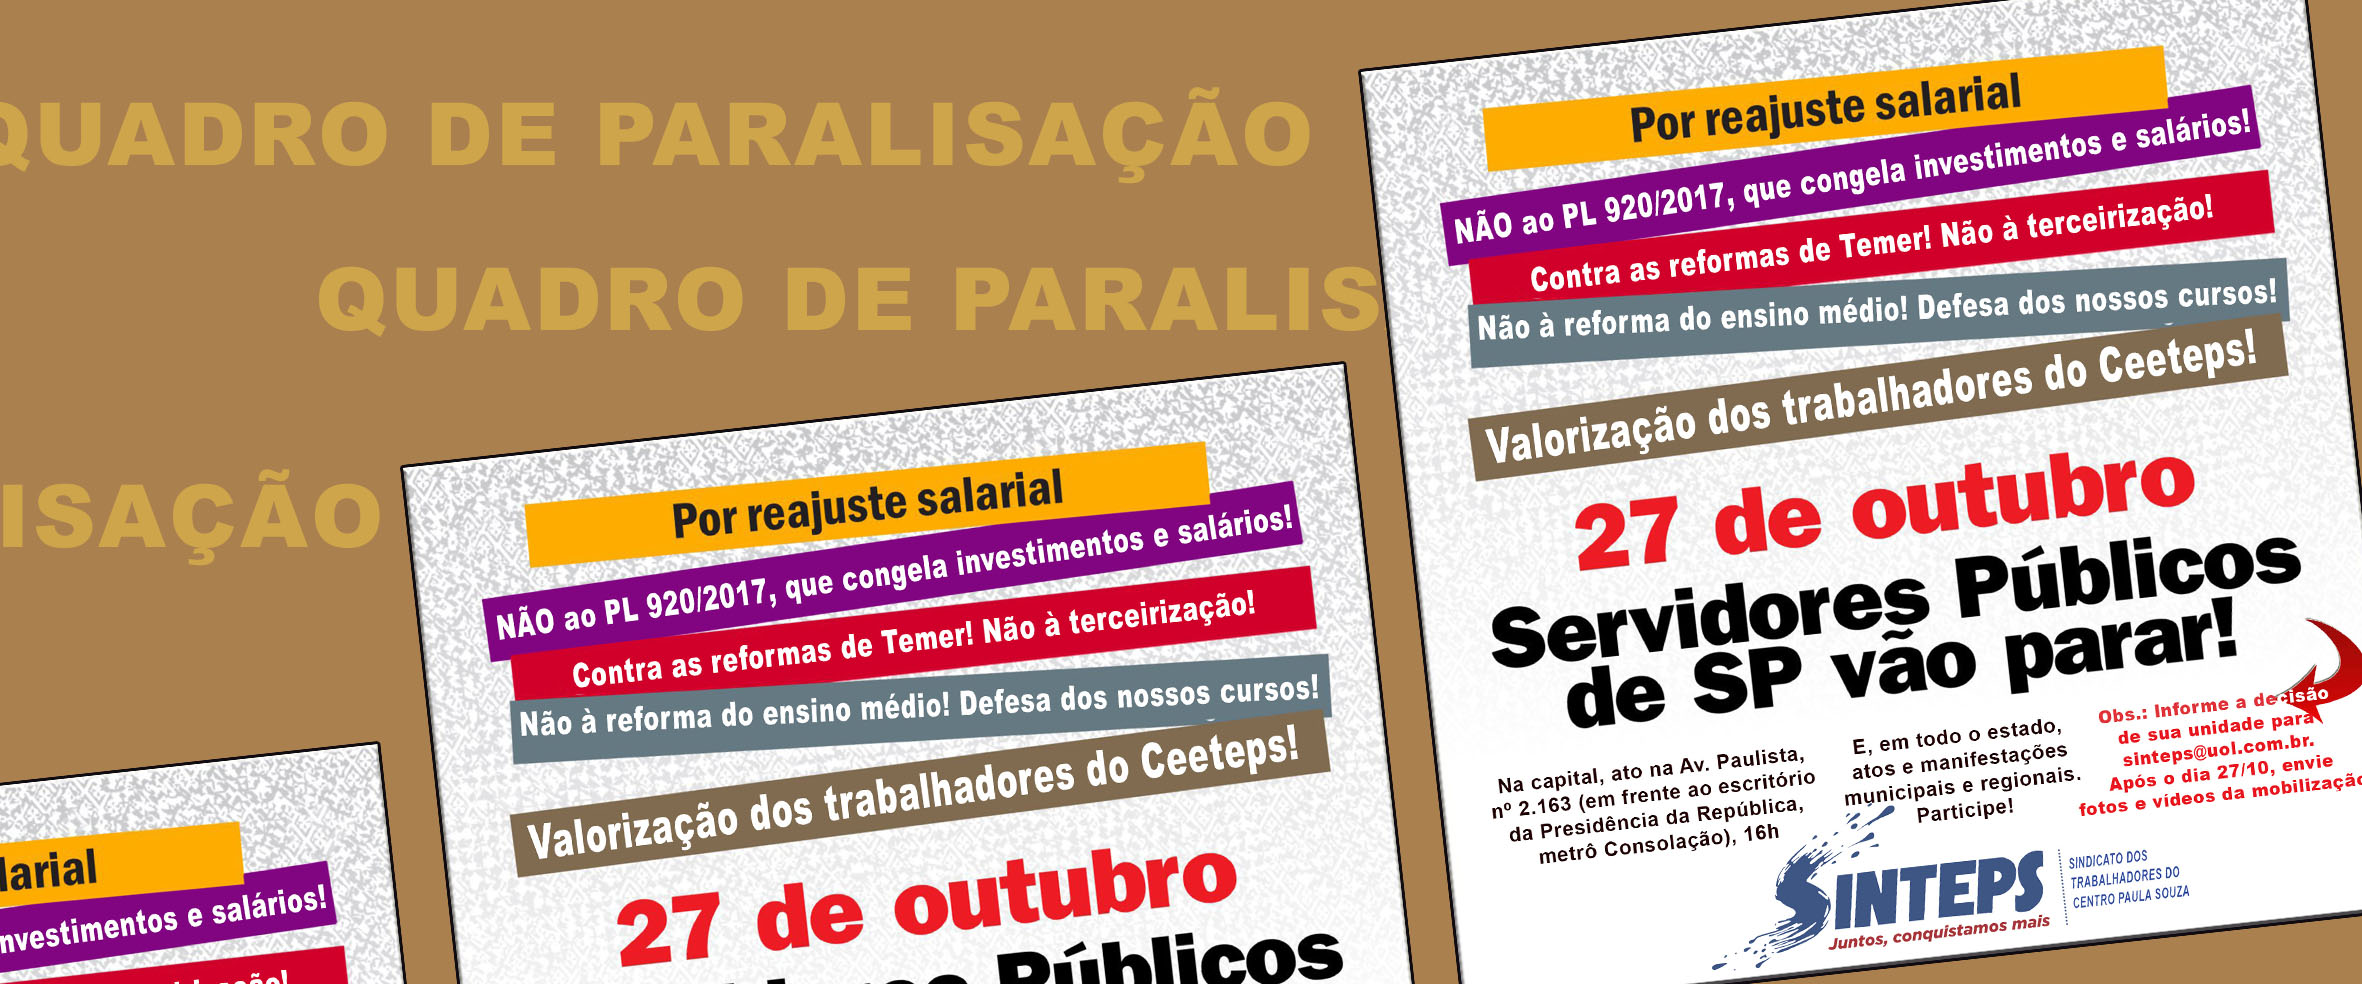 QUADRO DA PARALISAÇÃO NO CENTRO PAULA SOUZA EM 27/10/2017 - DIA DE LUTA DOS SERVIDORES PAULISTAS